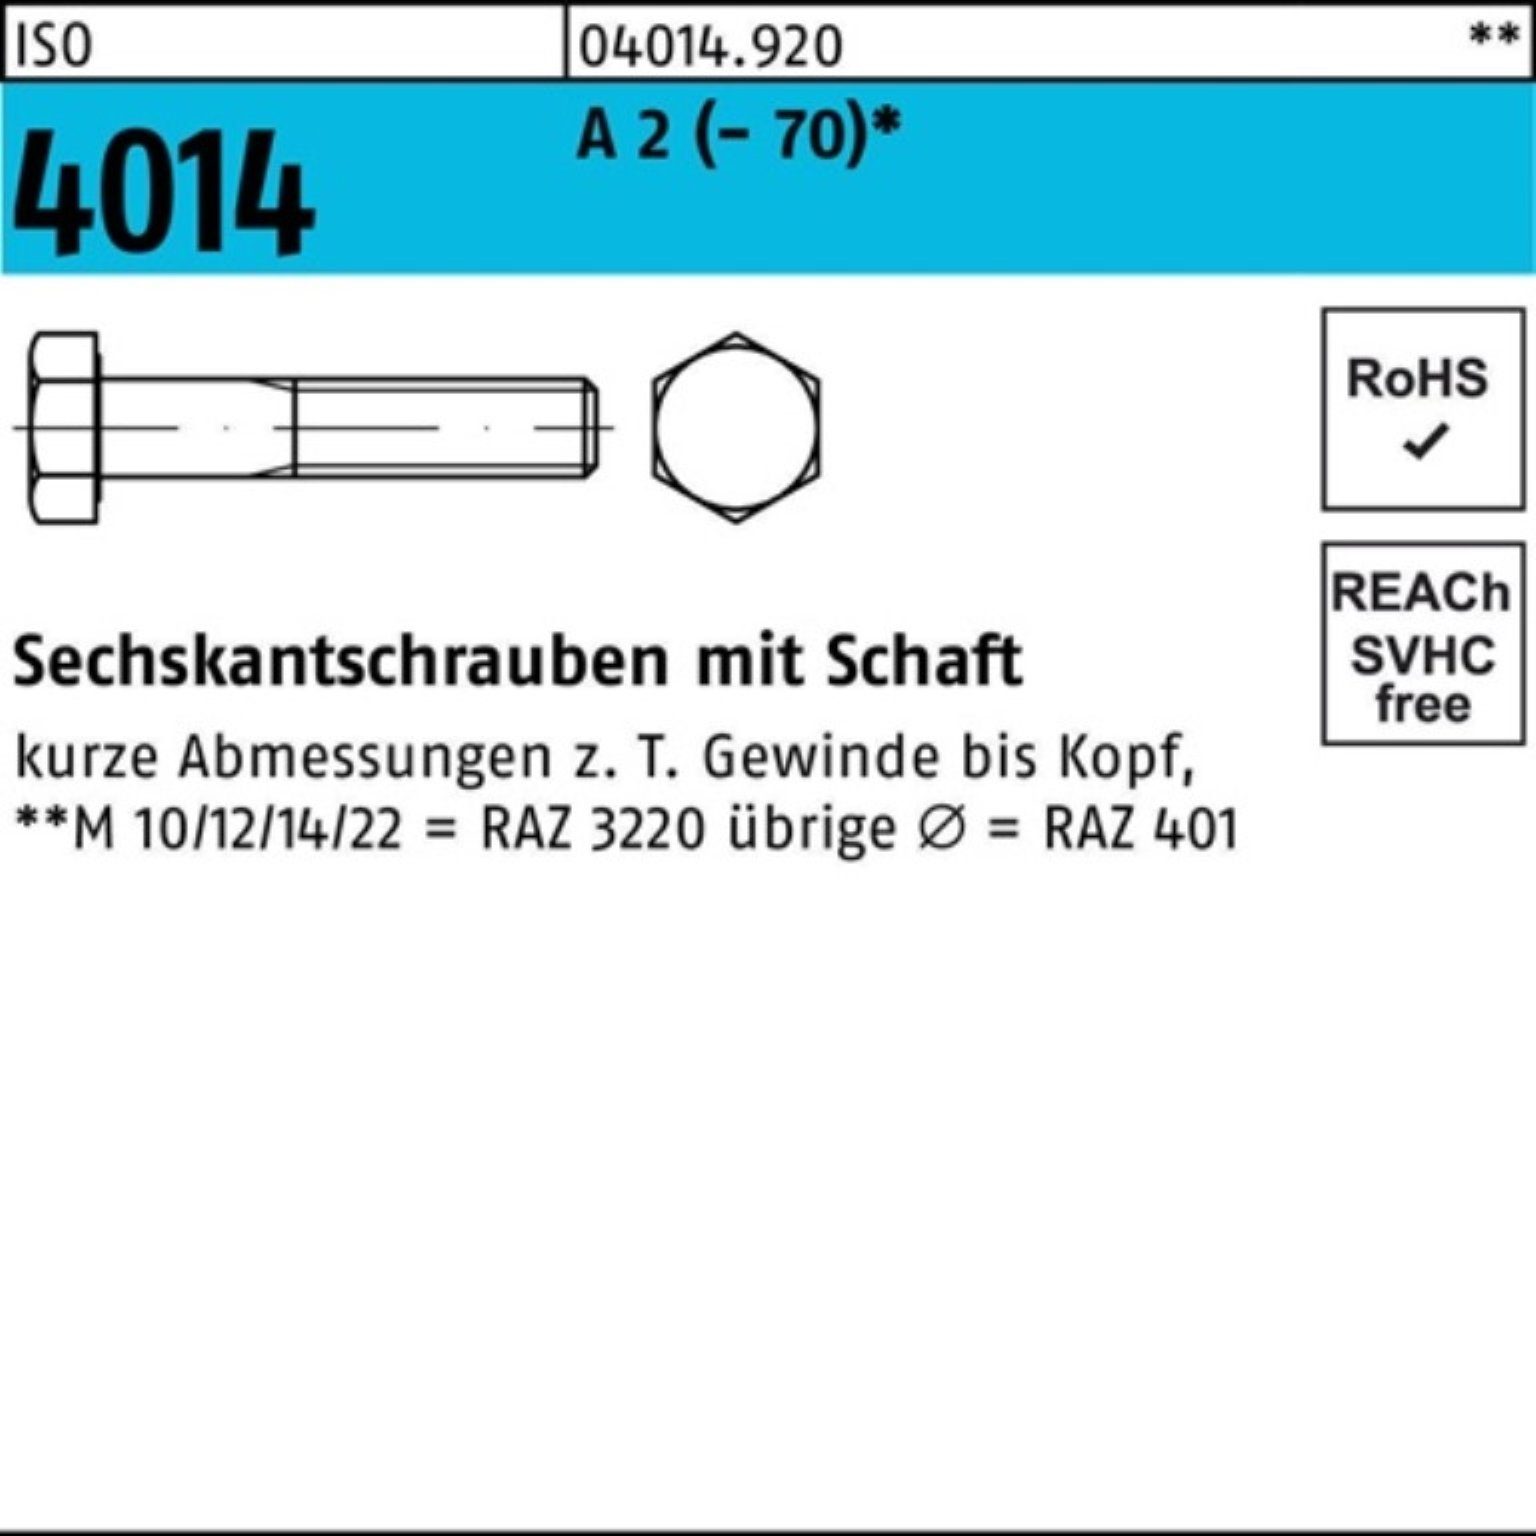 Bufab Sechskantschraube 100er Pack Sechskantschraube ISO 4014 Schaft M6x 85 A 2 (70) 100 St